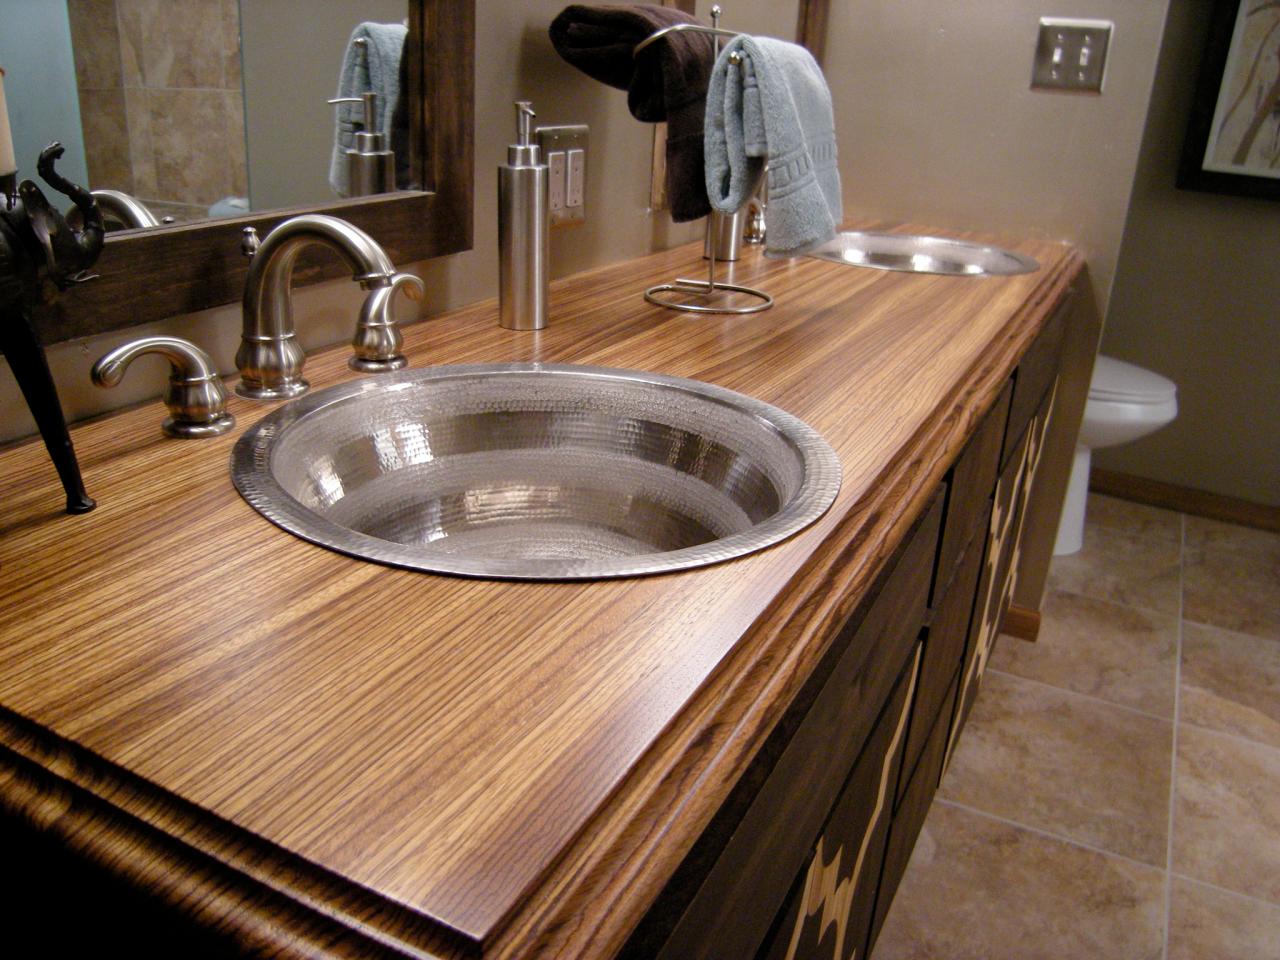 Bathroom Countertop Material Options, Bathroom Countertop Ideas